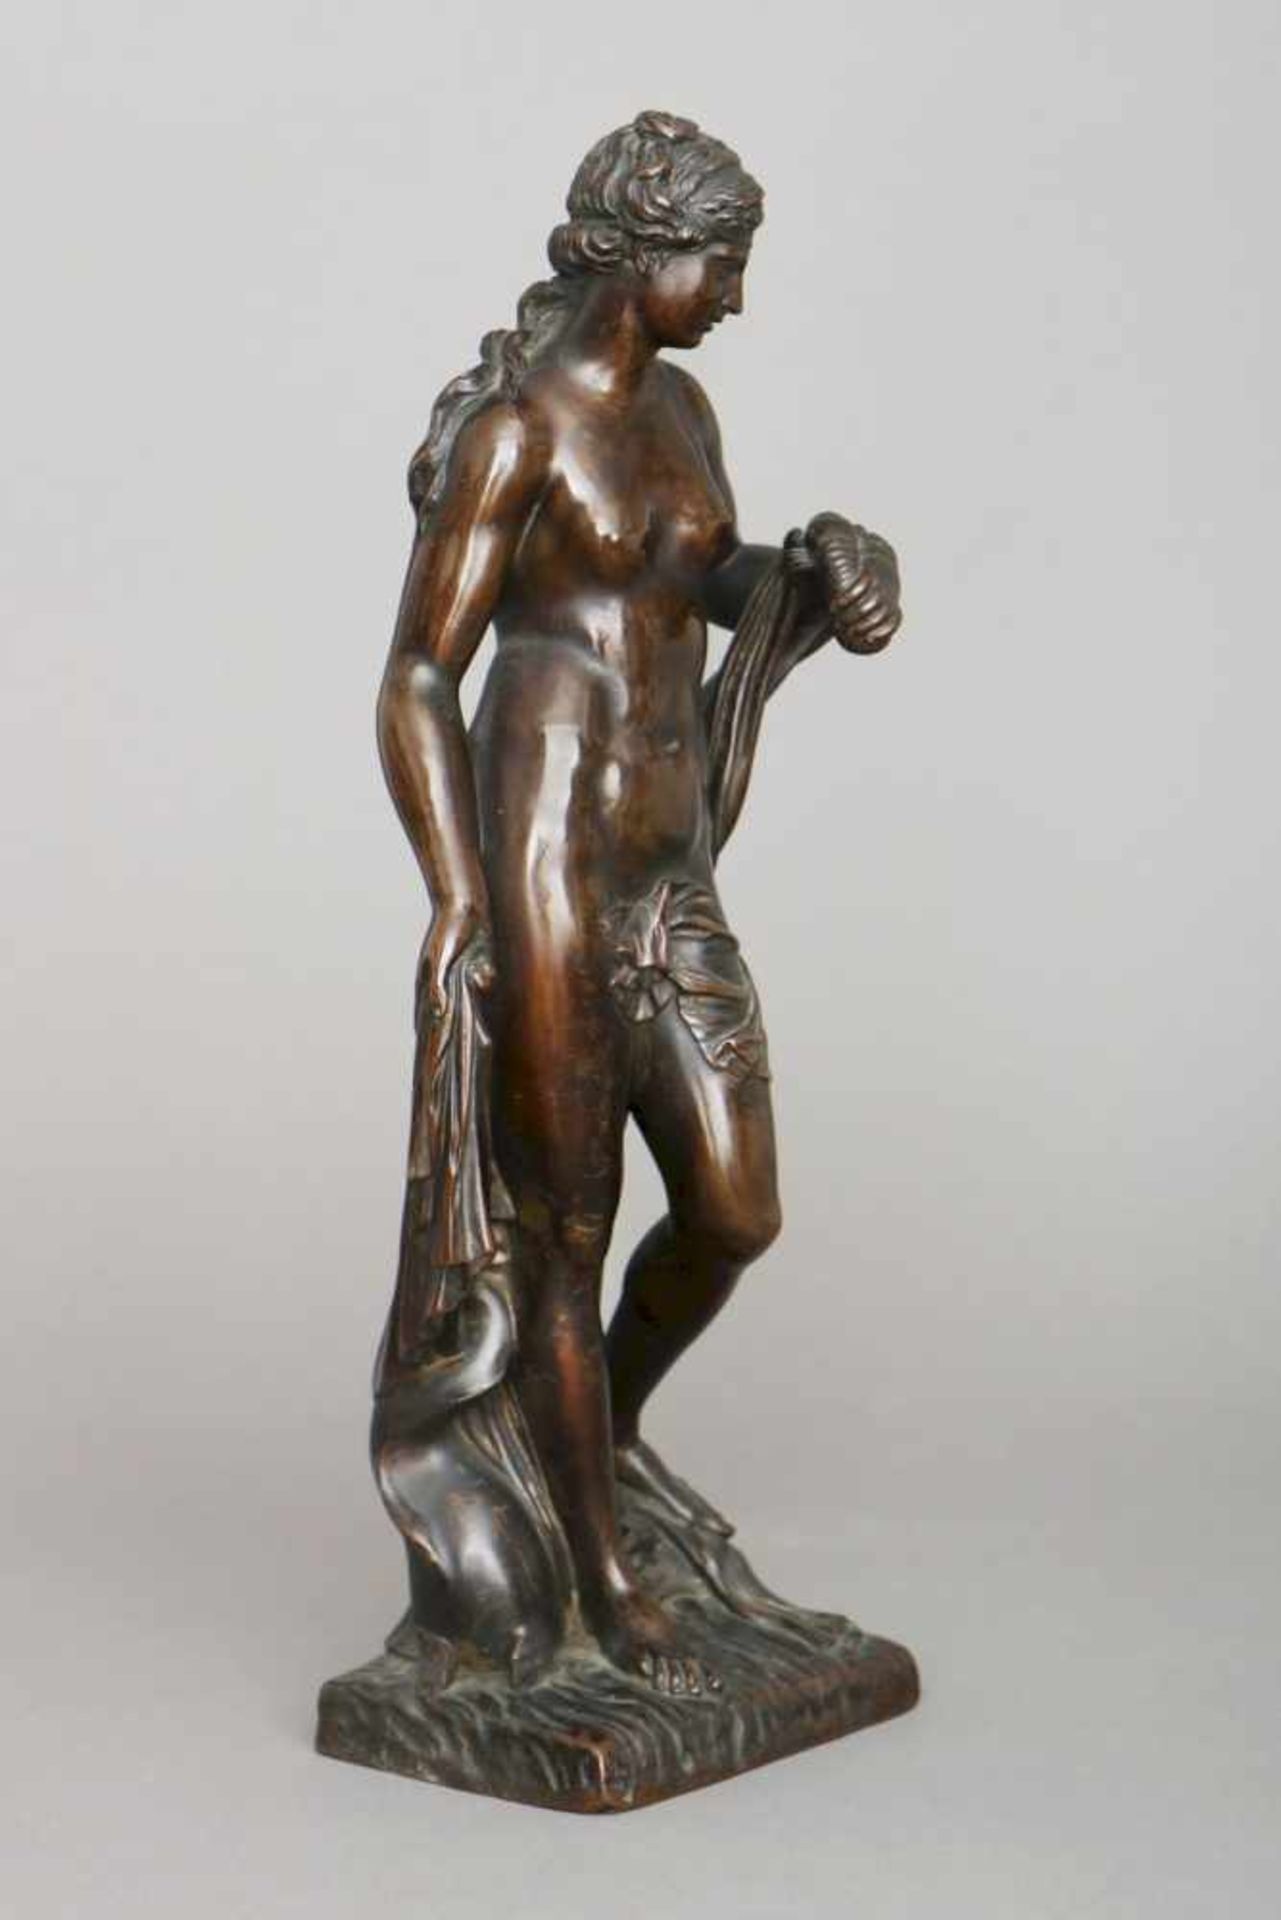 MICHEL ANGUIER (1612 Eu/Frankreich - 1686 Paris) Bronzefigur ¨Amphitrite¨dunkel patiniert,